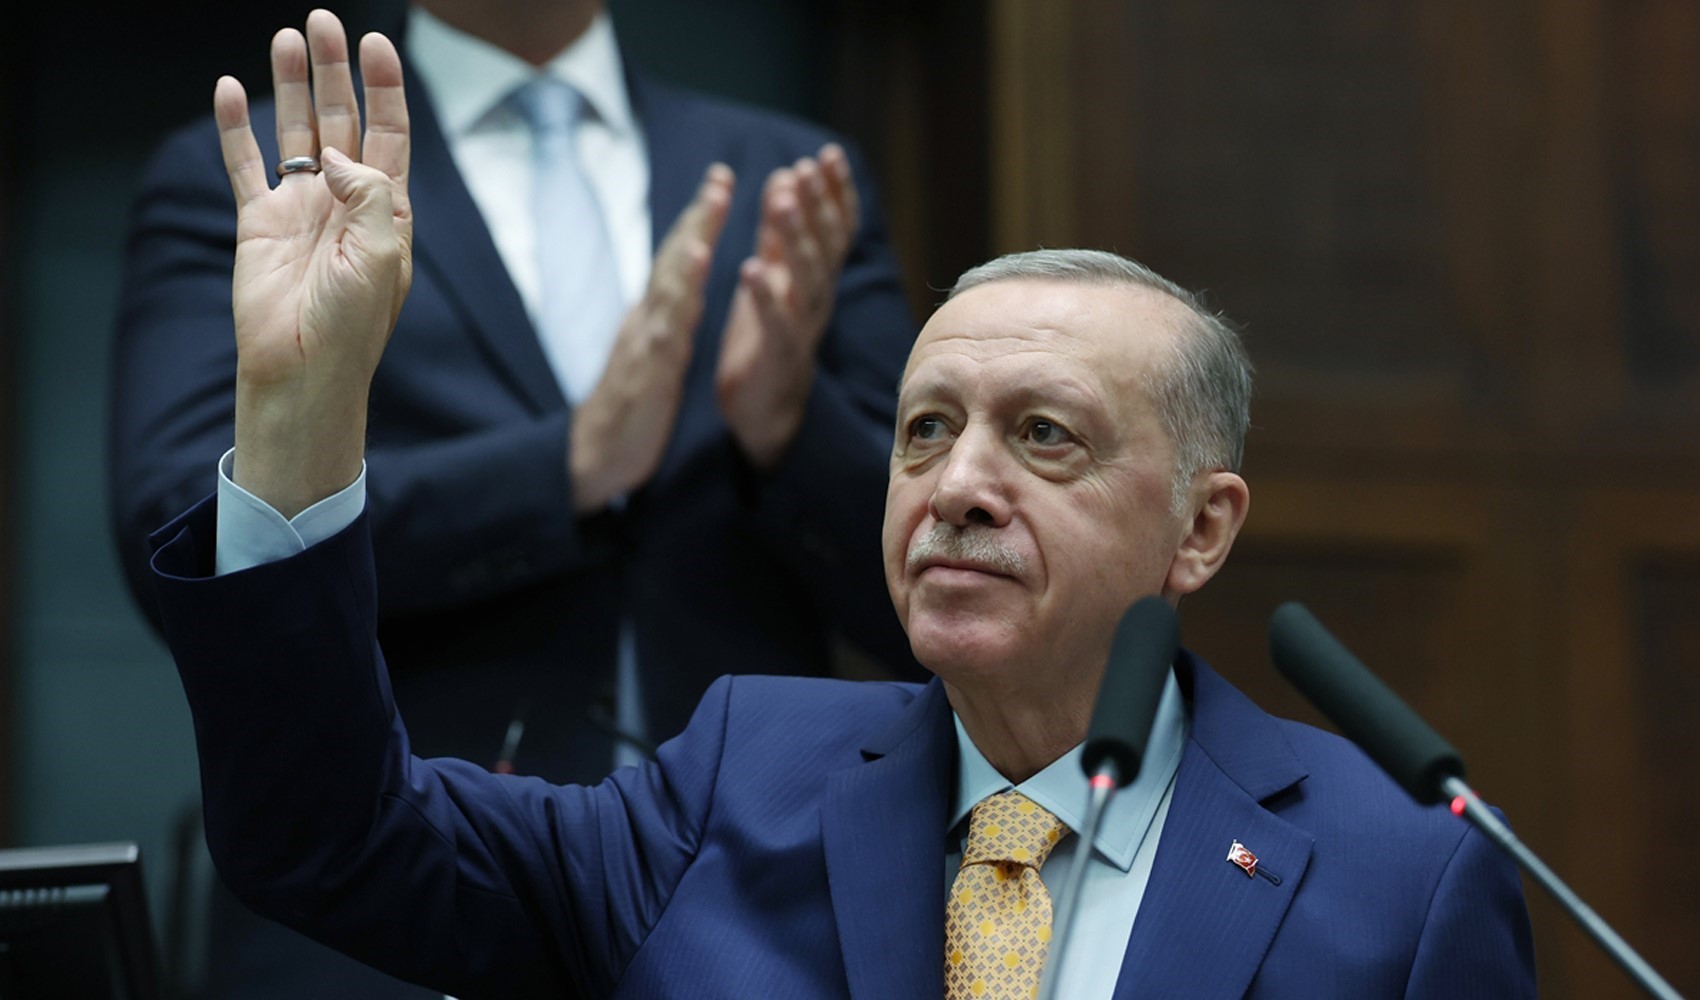 Cumhurbaşkanı ve AKP Genel Başkanı Recep Tayyip Erdoğan seçim sonrası AKP'nin ilk grup toplantısında konuştu: 'Biz bitti demeden bitmez, bitmeyecek'